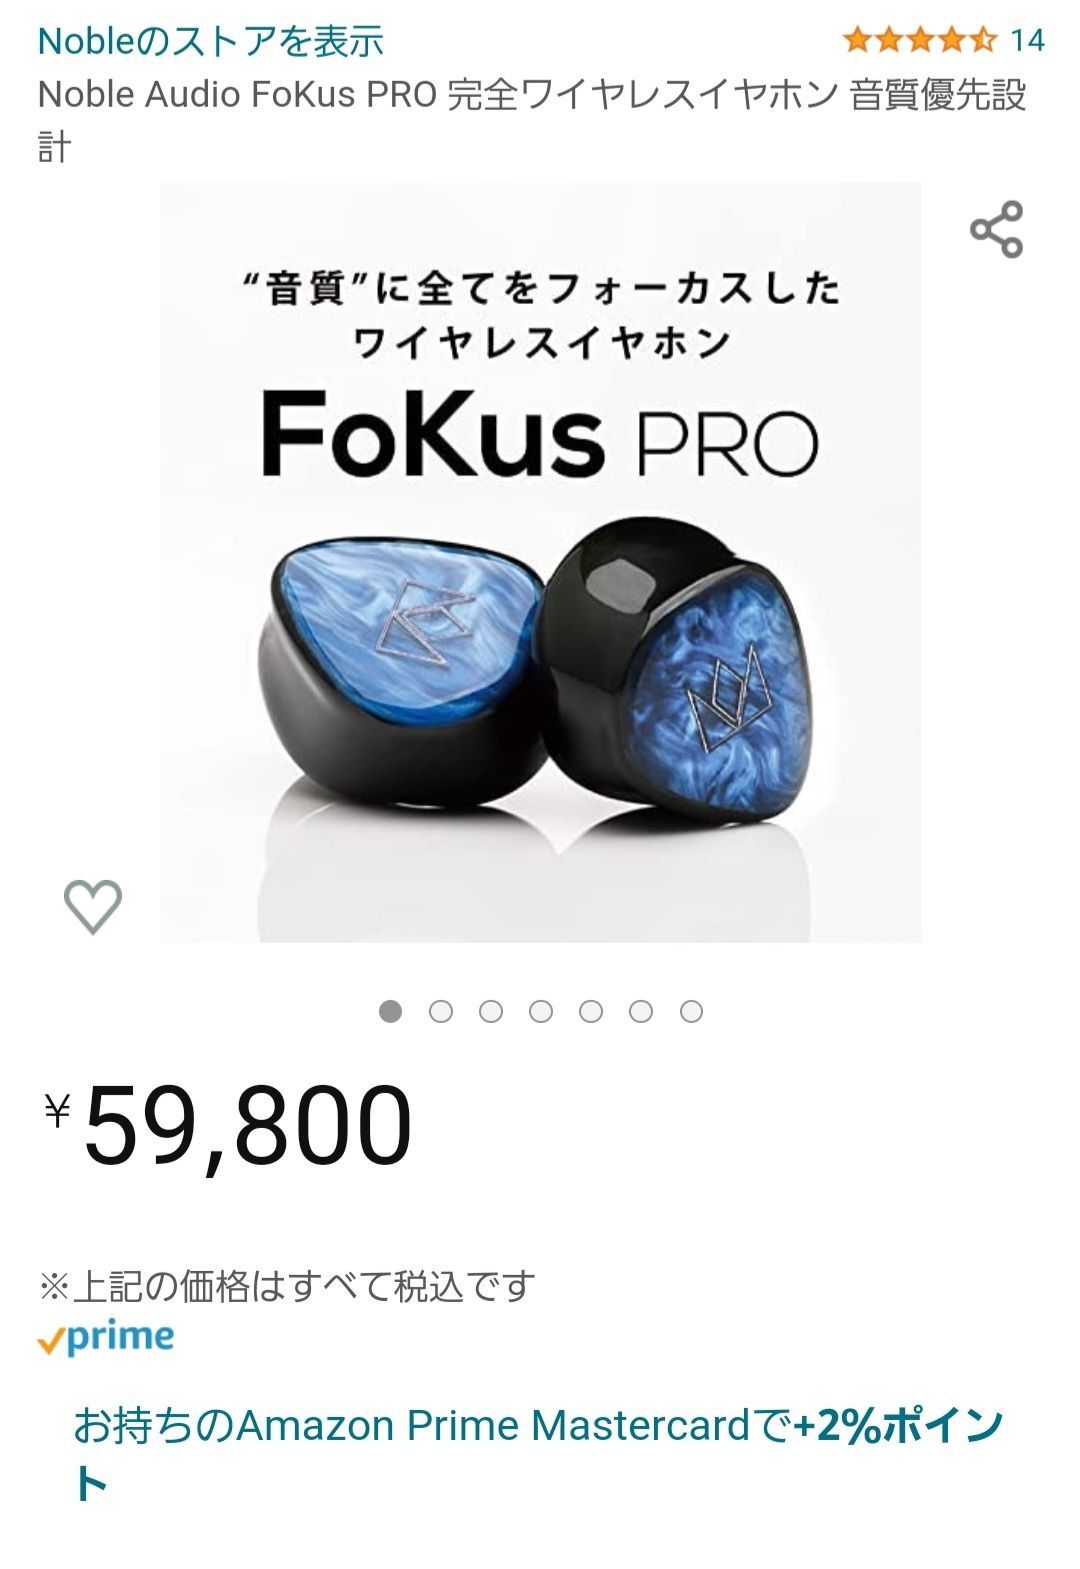 Noble Audio FoKus PRO ワイヤレスイヤホン - 【迅速発送】コスメ